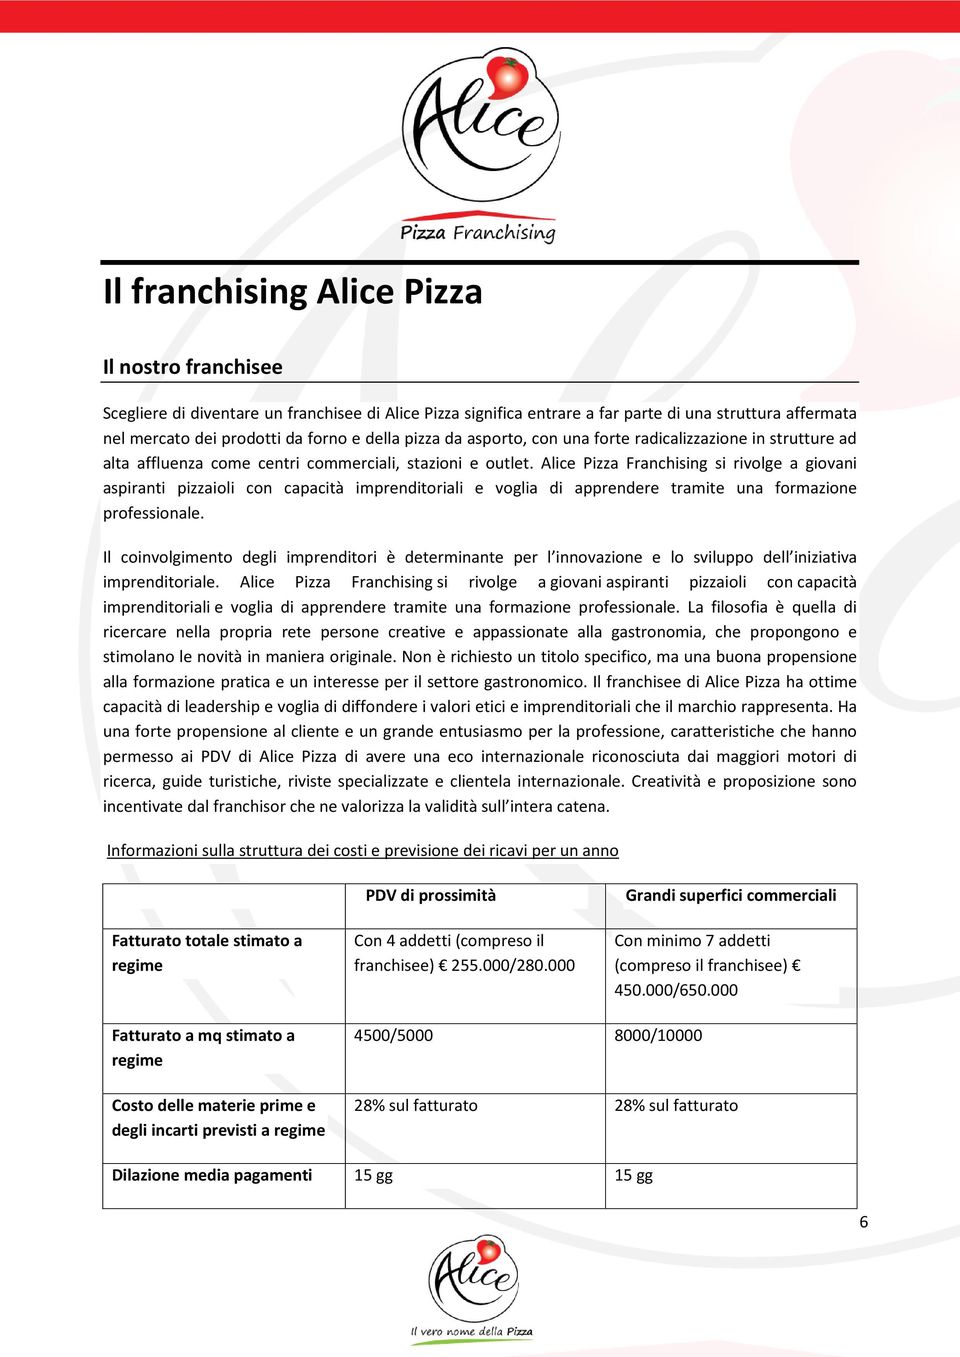 Alice Pizza Franchising si rivlge a givani aspiranti pizzaili cn capacità imprenditriali e vglia di apprendere tramite una frmazine prfessinale.